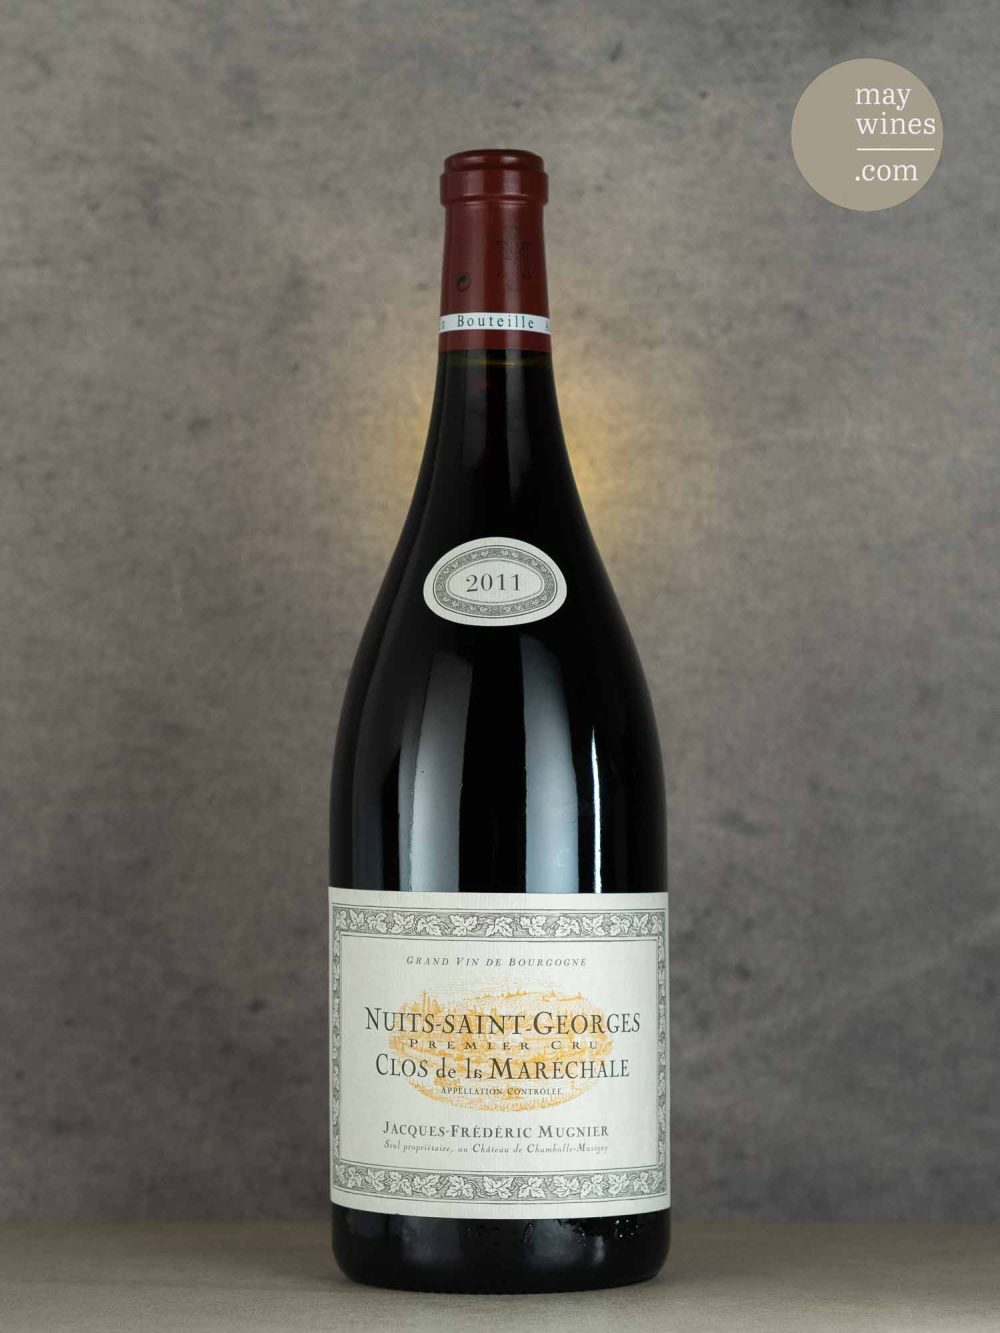 May Wines – Rotwein – 2011 Nuits-Staint-Georges Clos de la Maréchale Premier Cru - Jacques-Frédéric Mugnier